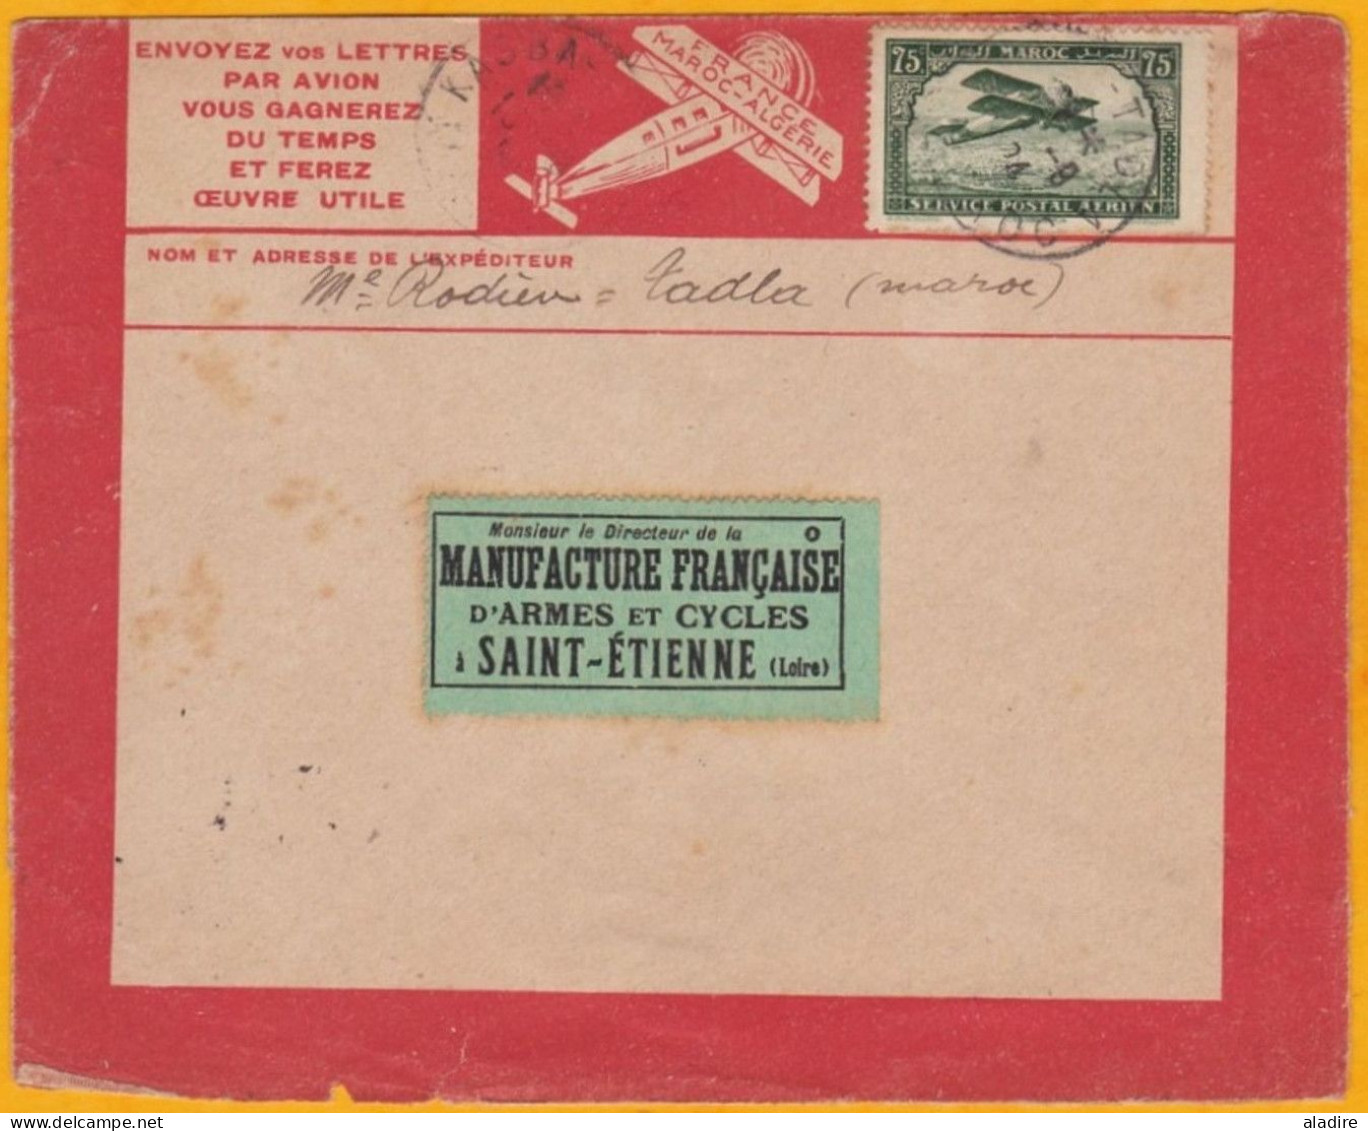 1924 - Enveloppe Par Avion Précurseur Latécoère De Kasba Tadla, Maroc, France Vers Saint Etienne Via Casablanca - Poste Aérienne